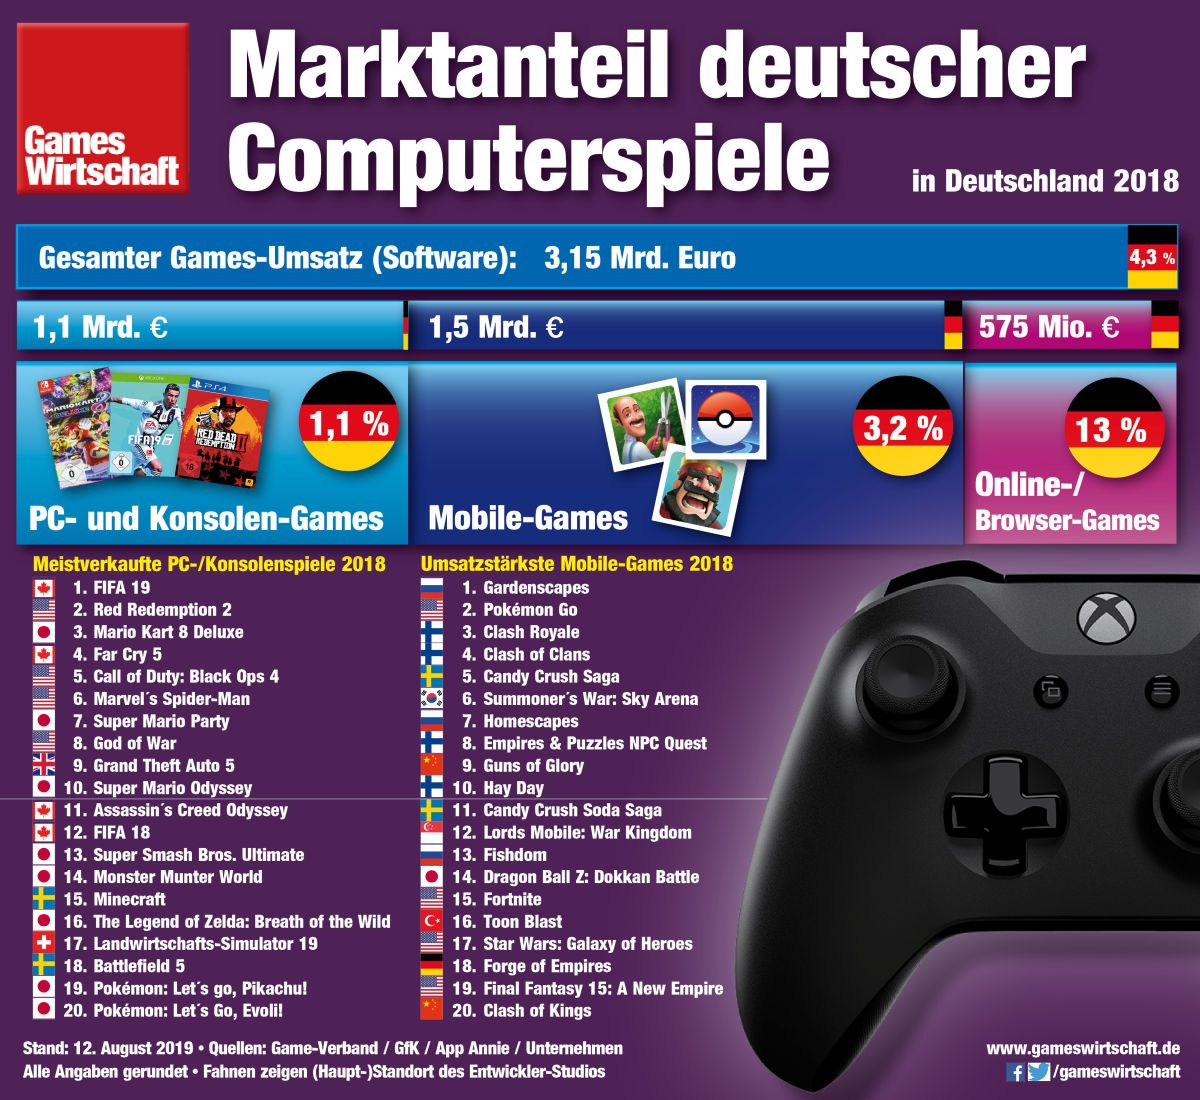 Games-Umsatz 2018 in Deutschland - im Vergleich zu Musik und Film (Stand: April 2019)